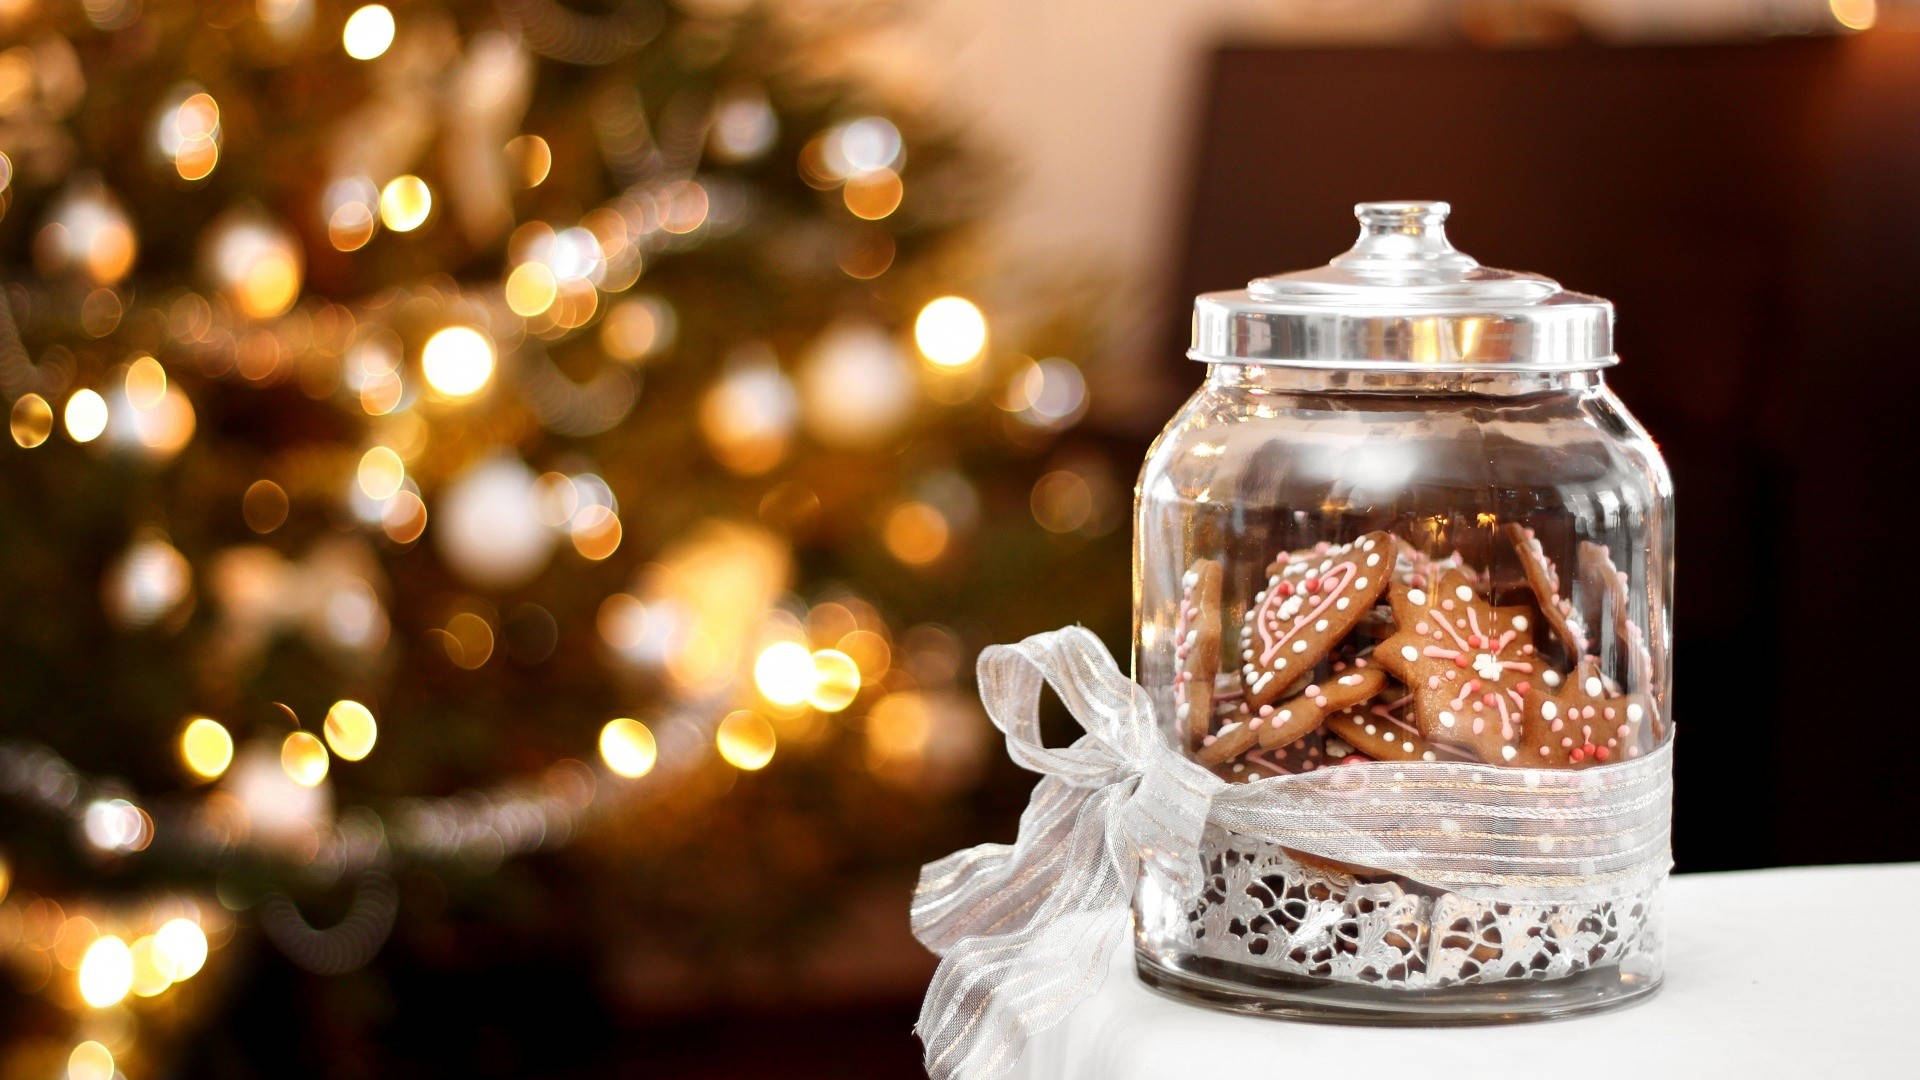 Aesthetic Christmas Cookie Jar